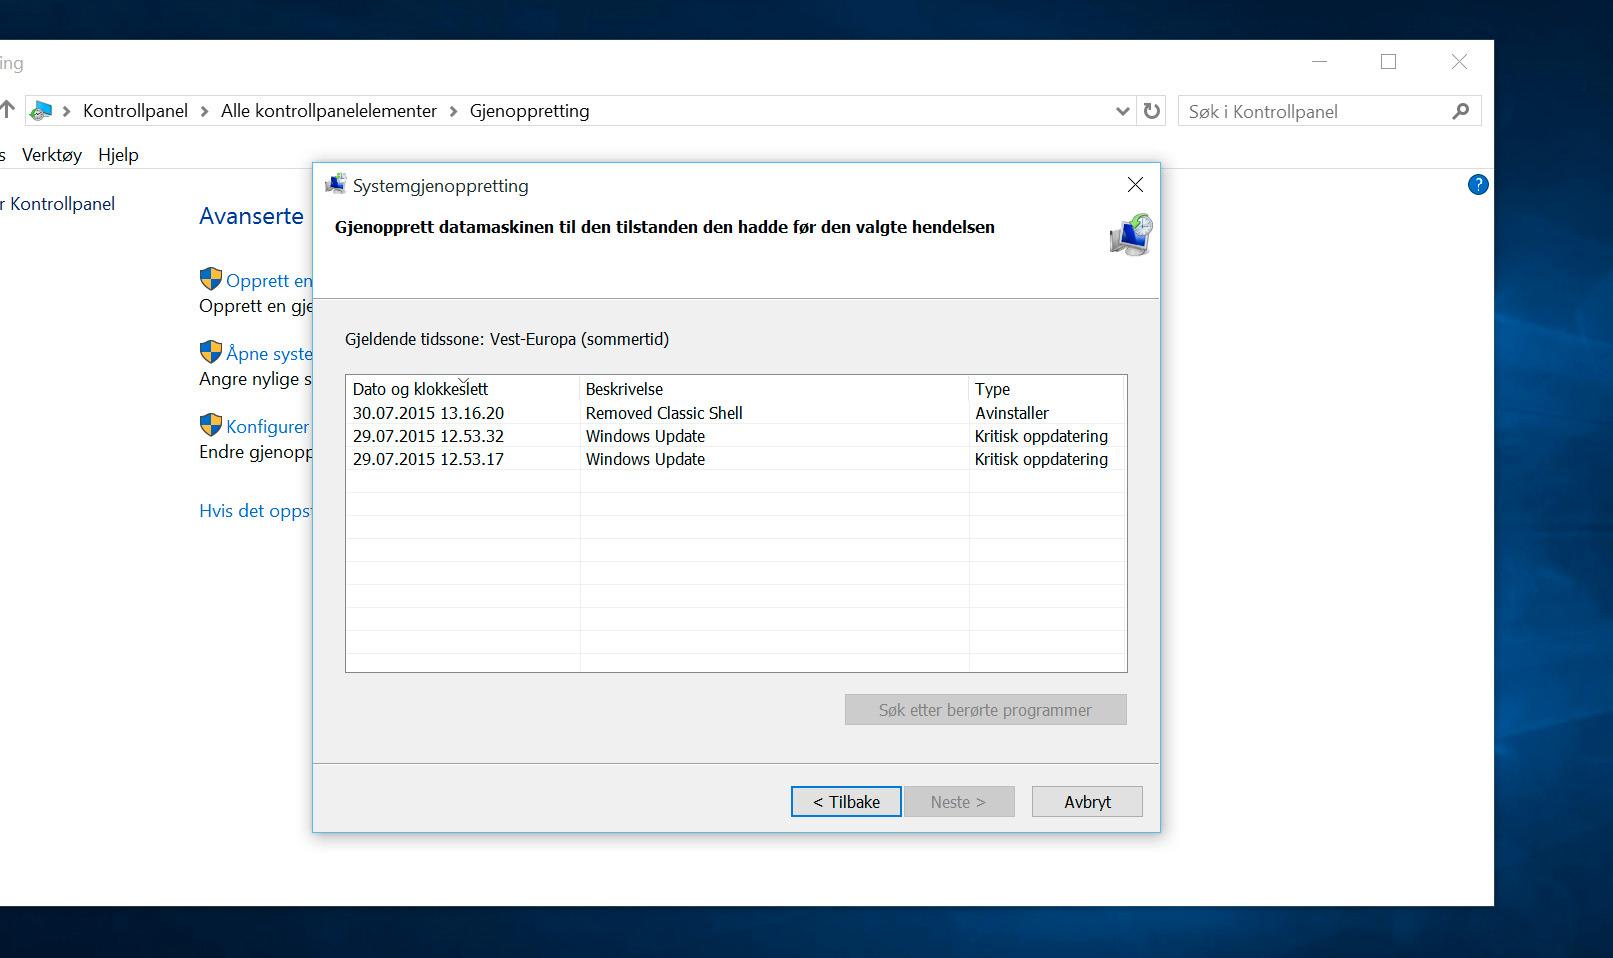 Slik ser den samme prosessen ut om du kjører Windows på norsk. Foto: Finn Jarle Kvalheim, Tek.no